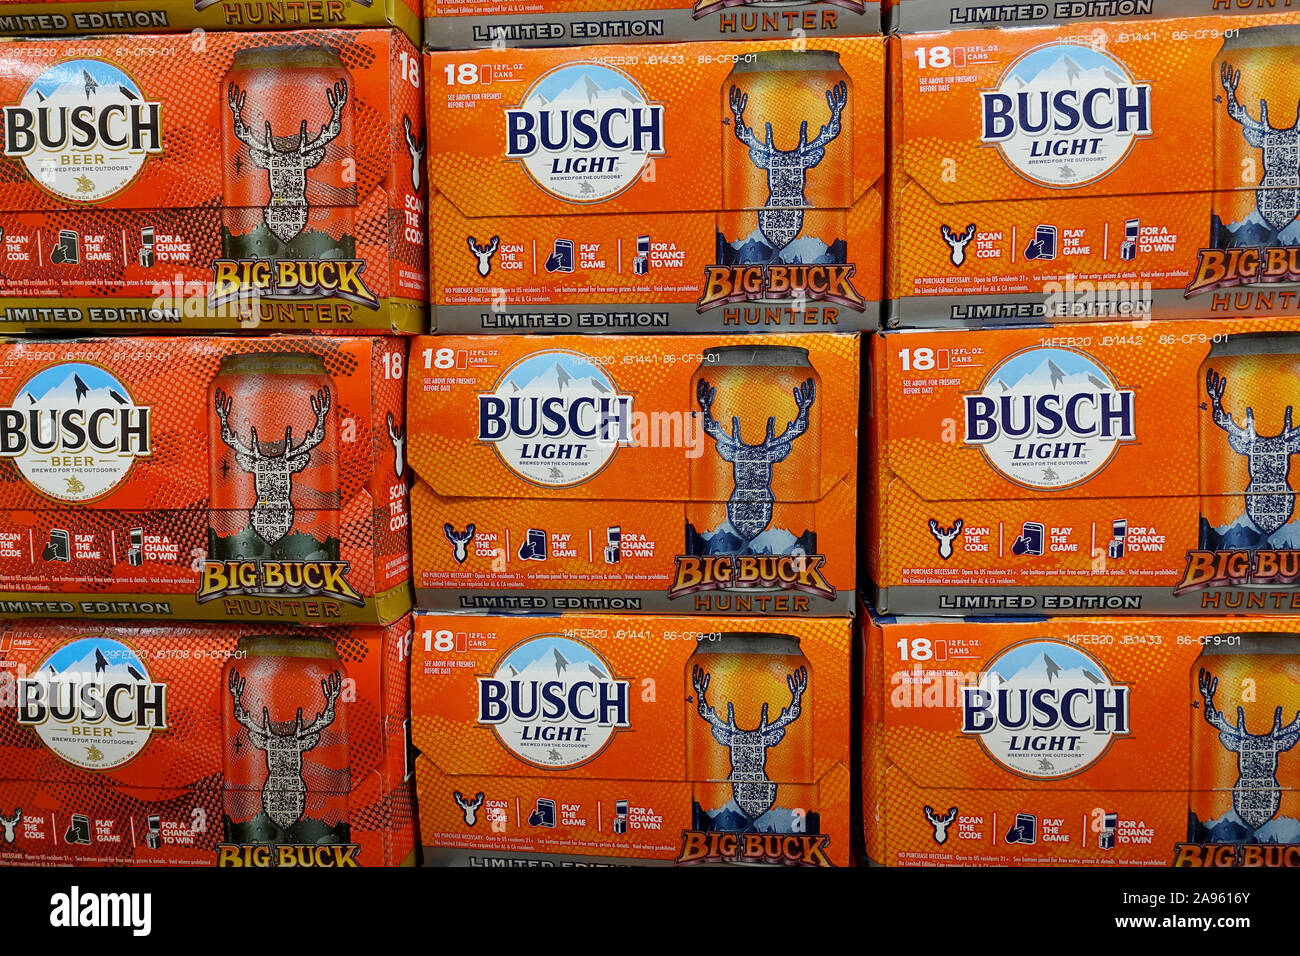 Limited Edition 18 packs de bière Busch peut empilées dans un supermarché Afficher Banque D'Images